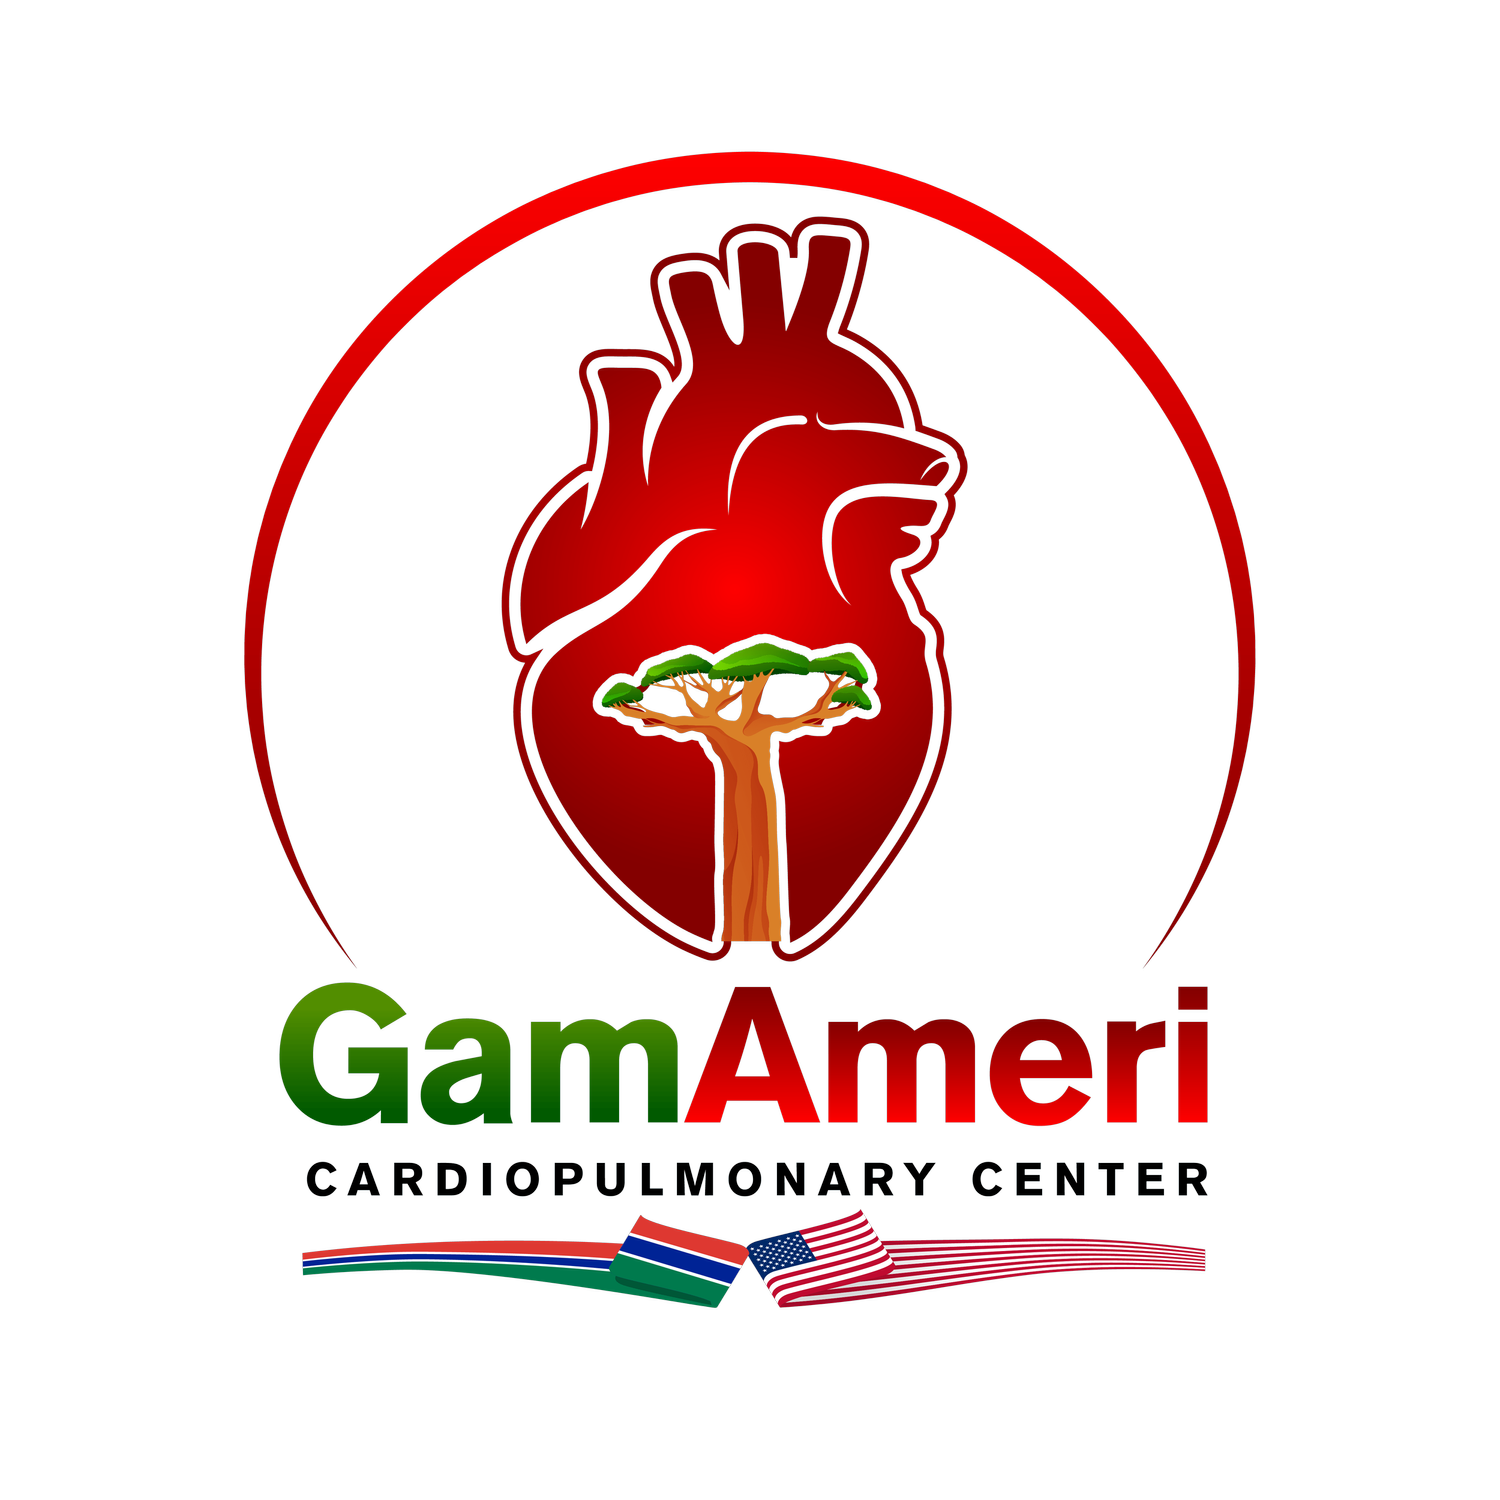 GamAmeri cardiopulmonary center